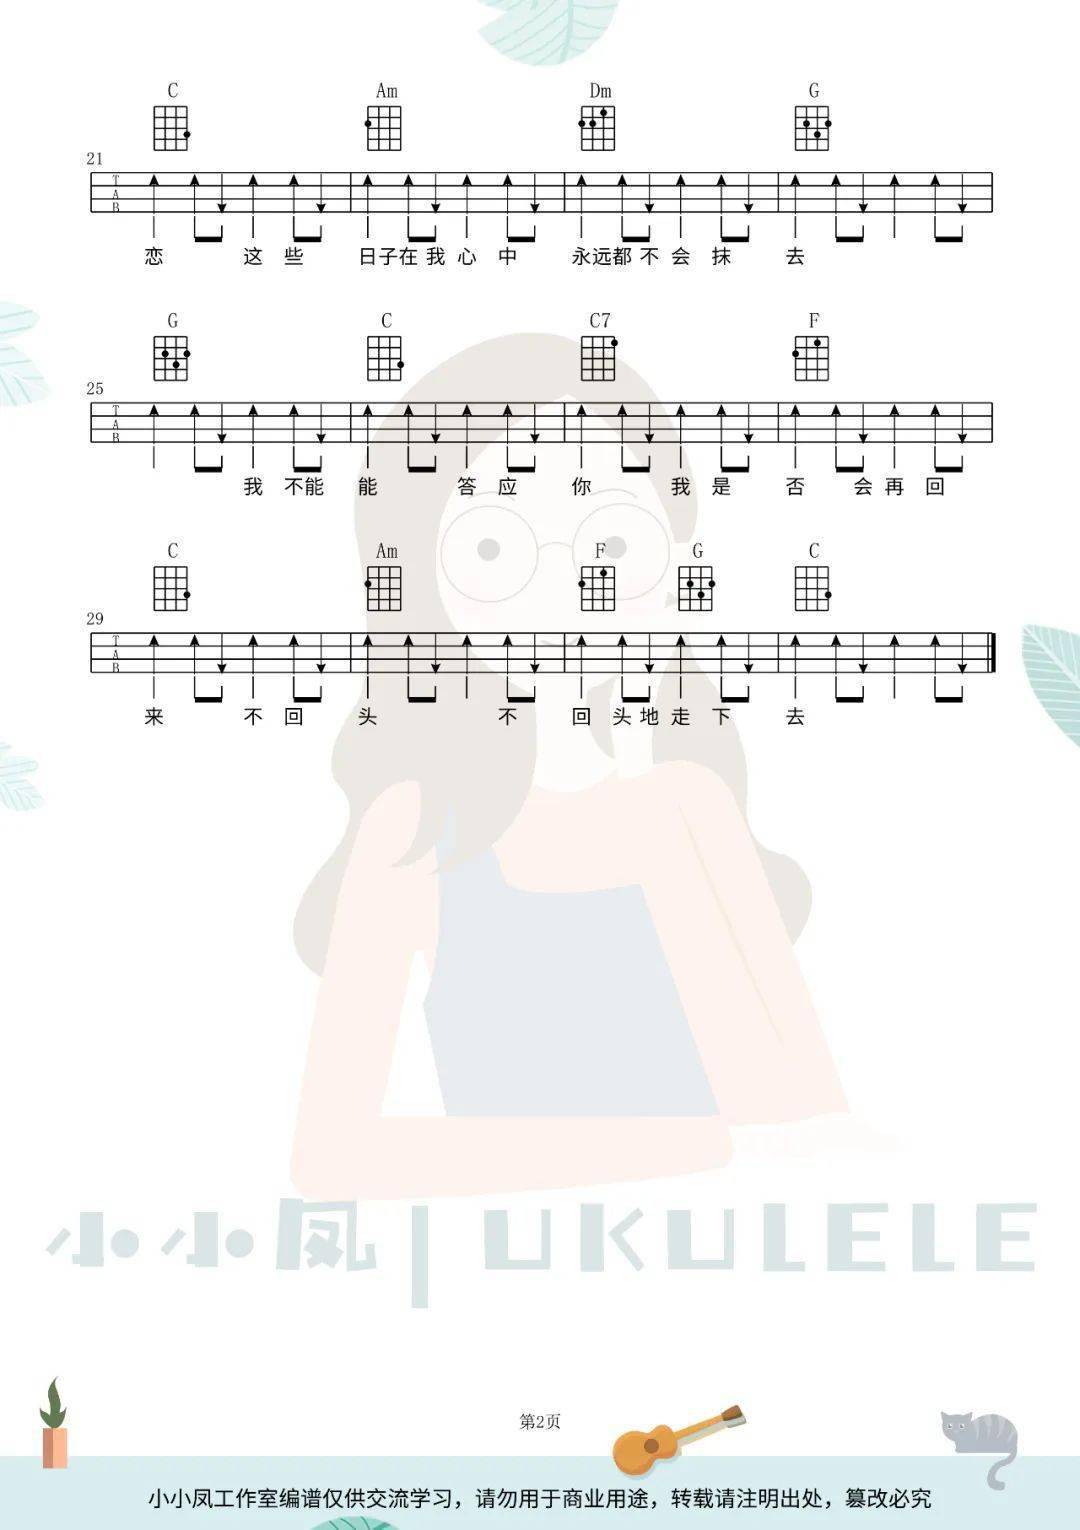 《从零开始学Ukulele》第十课_民谣分解节奏型《青花瓷》弹唱教学 - 尤克里里吧